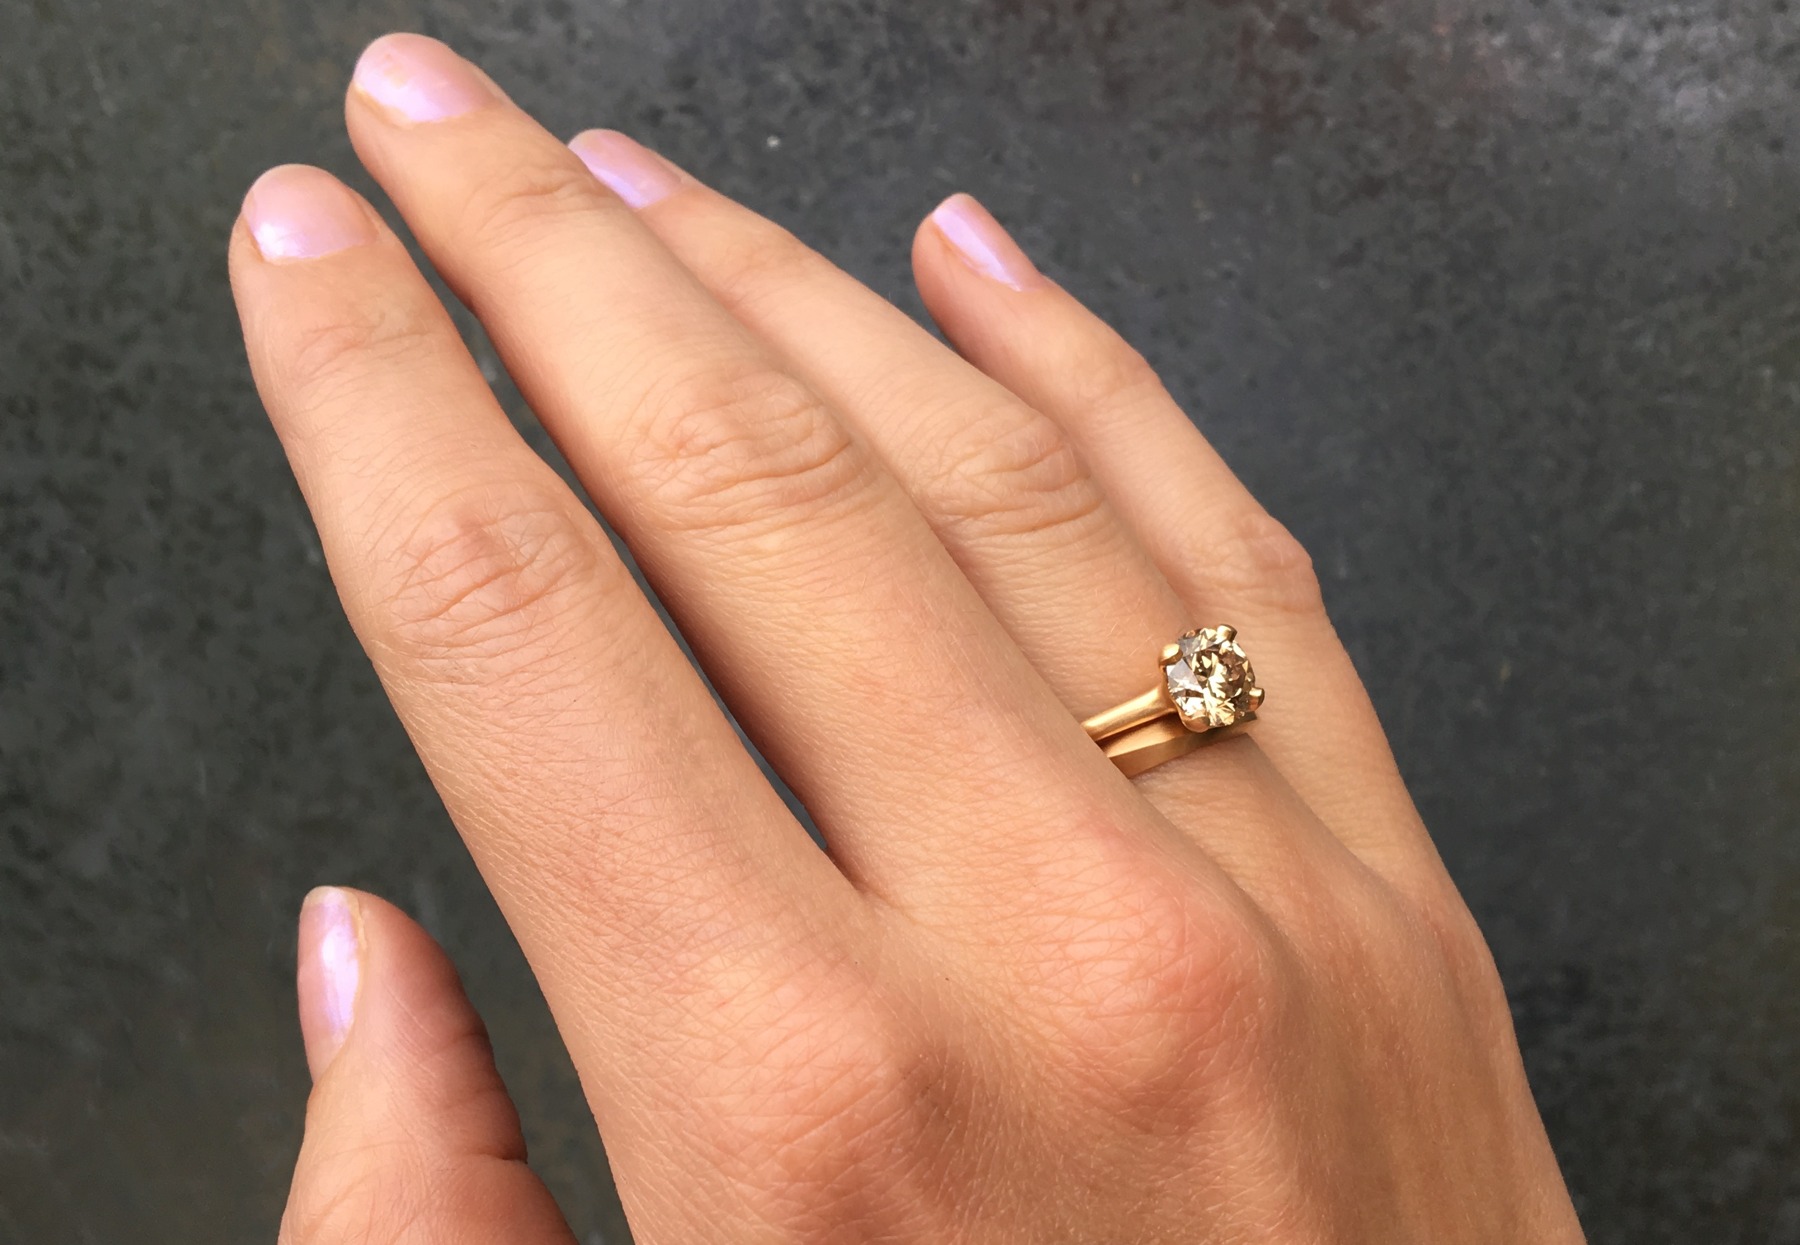 Cognac diamond rose gold engagement wedding ring set